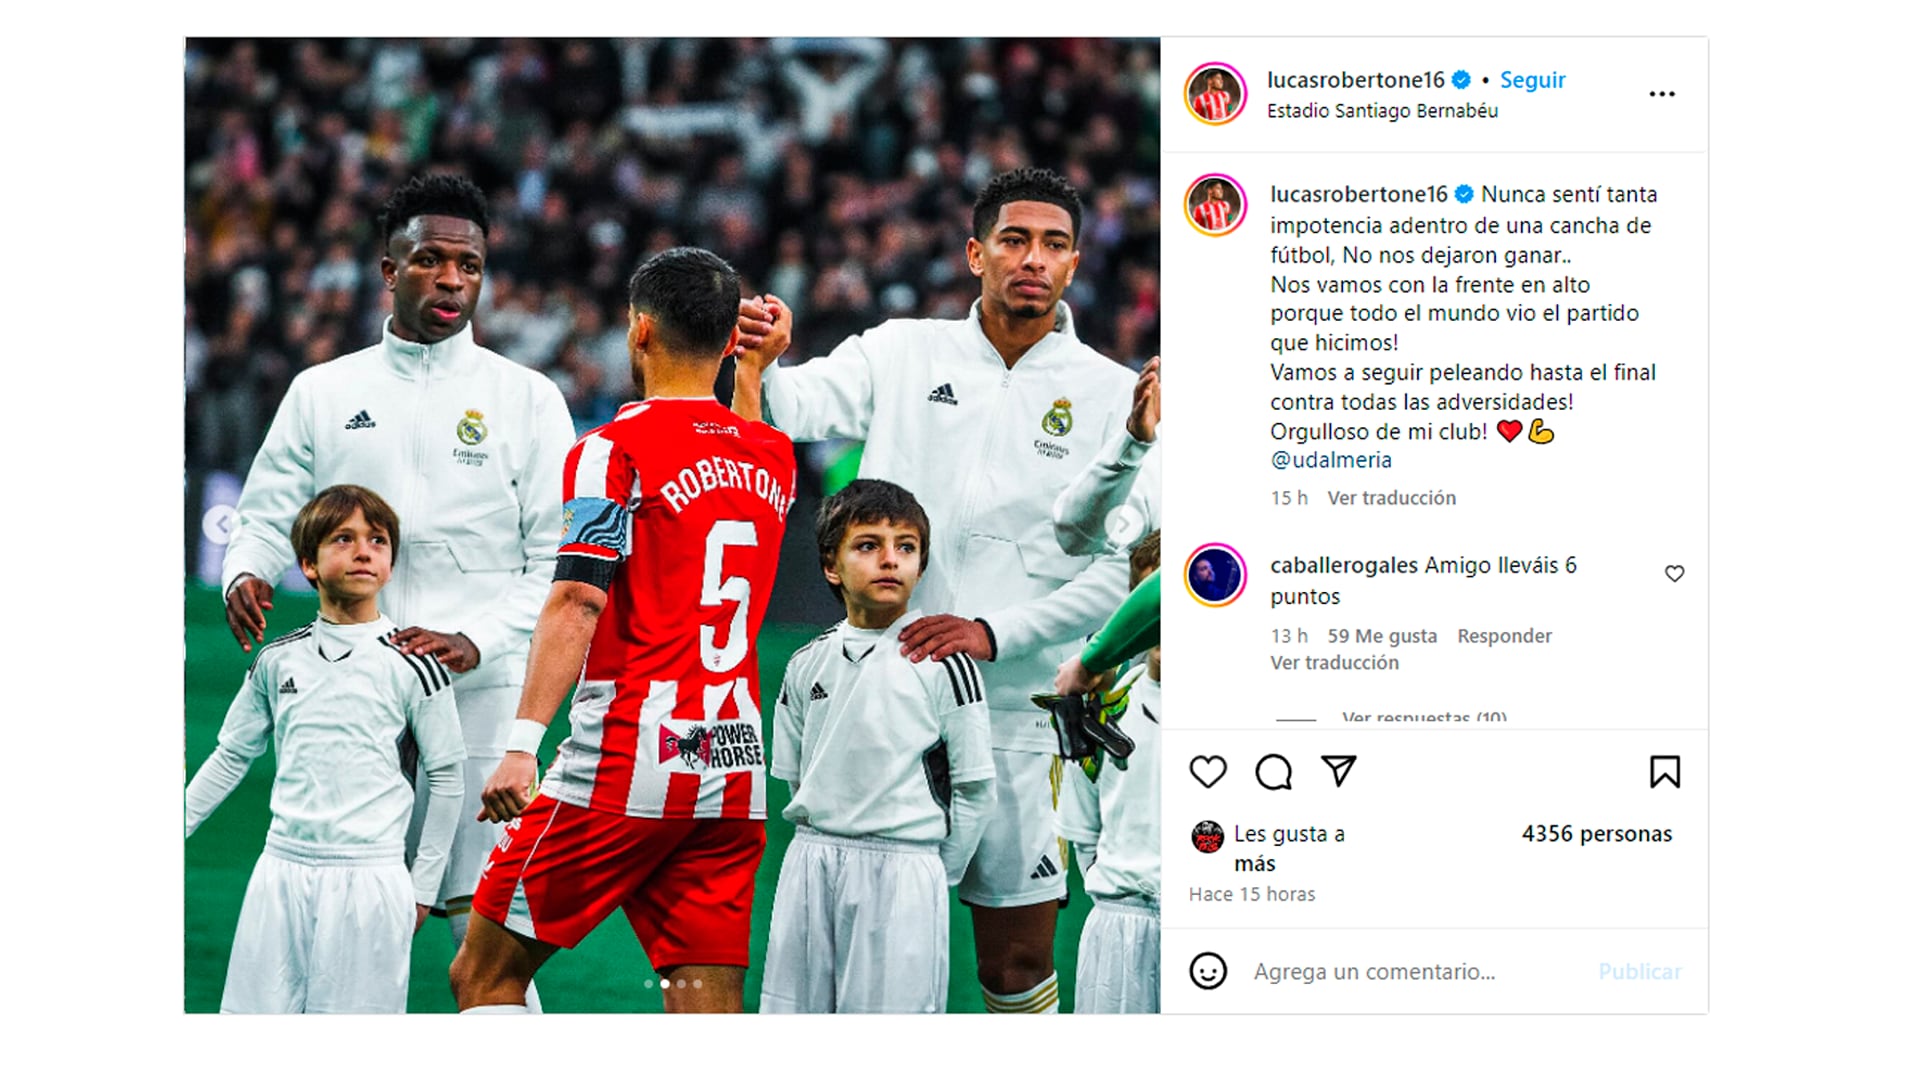 El enojo de Lucas Robertone tras la derrota ante Real Madrid